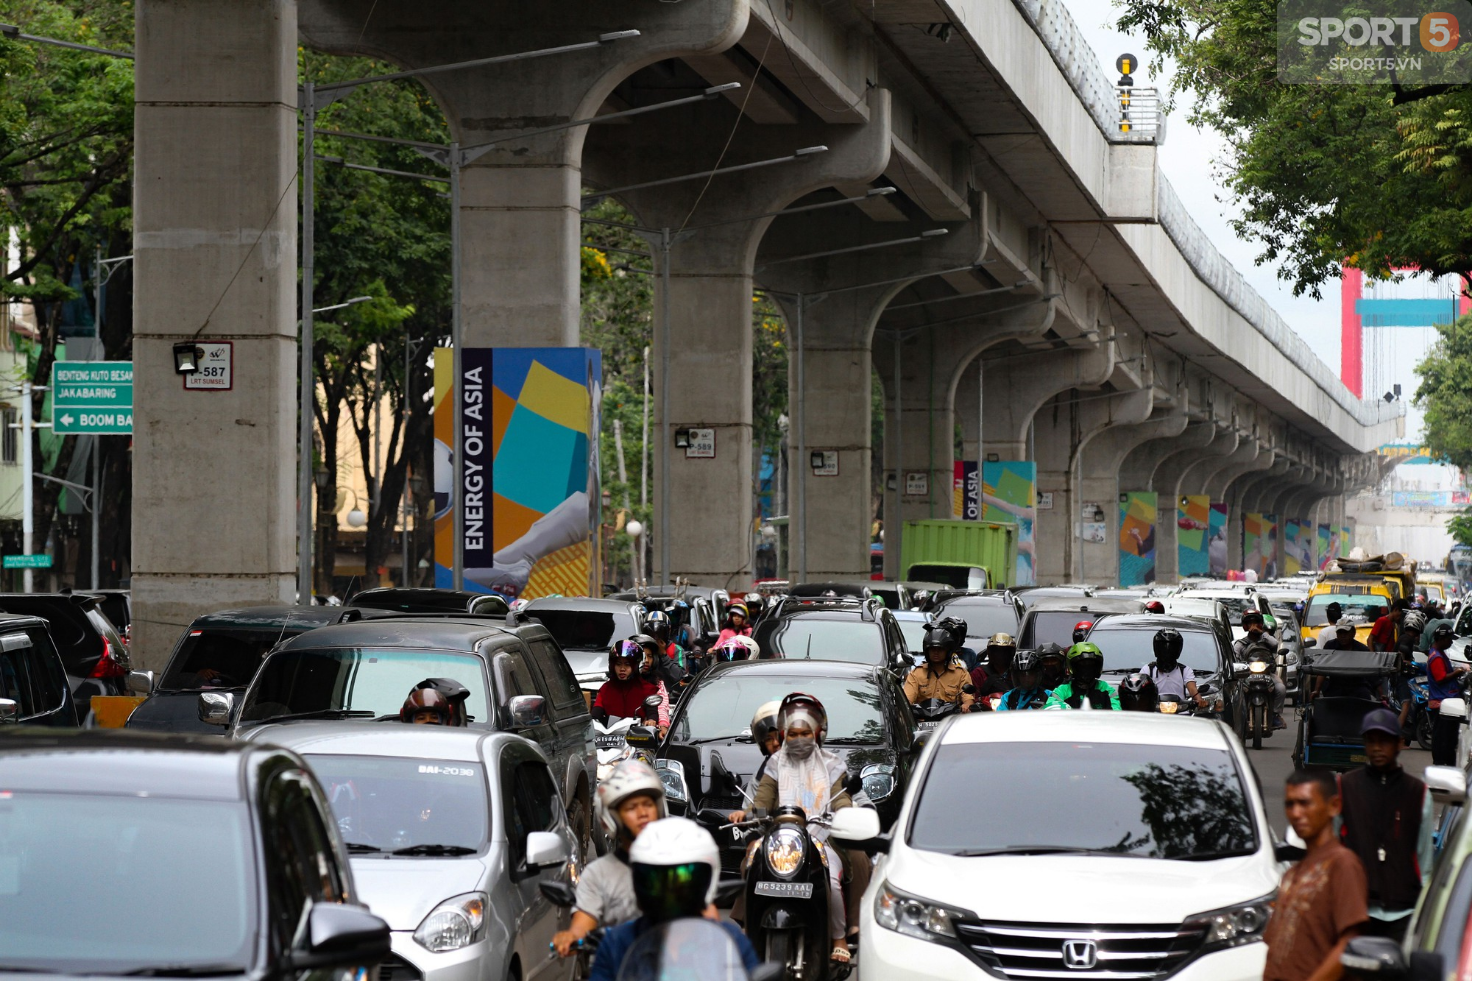 Indonesia ban hành luật có một không hai nhằm giảm tắc đường tại ASIAD 2018 - Ảnh 1.